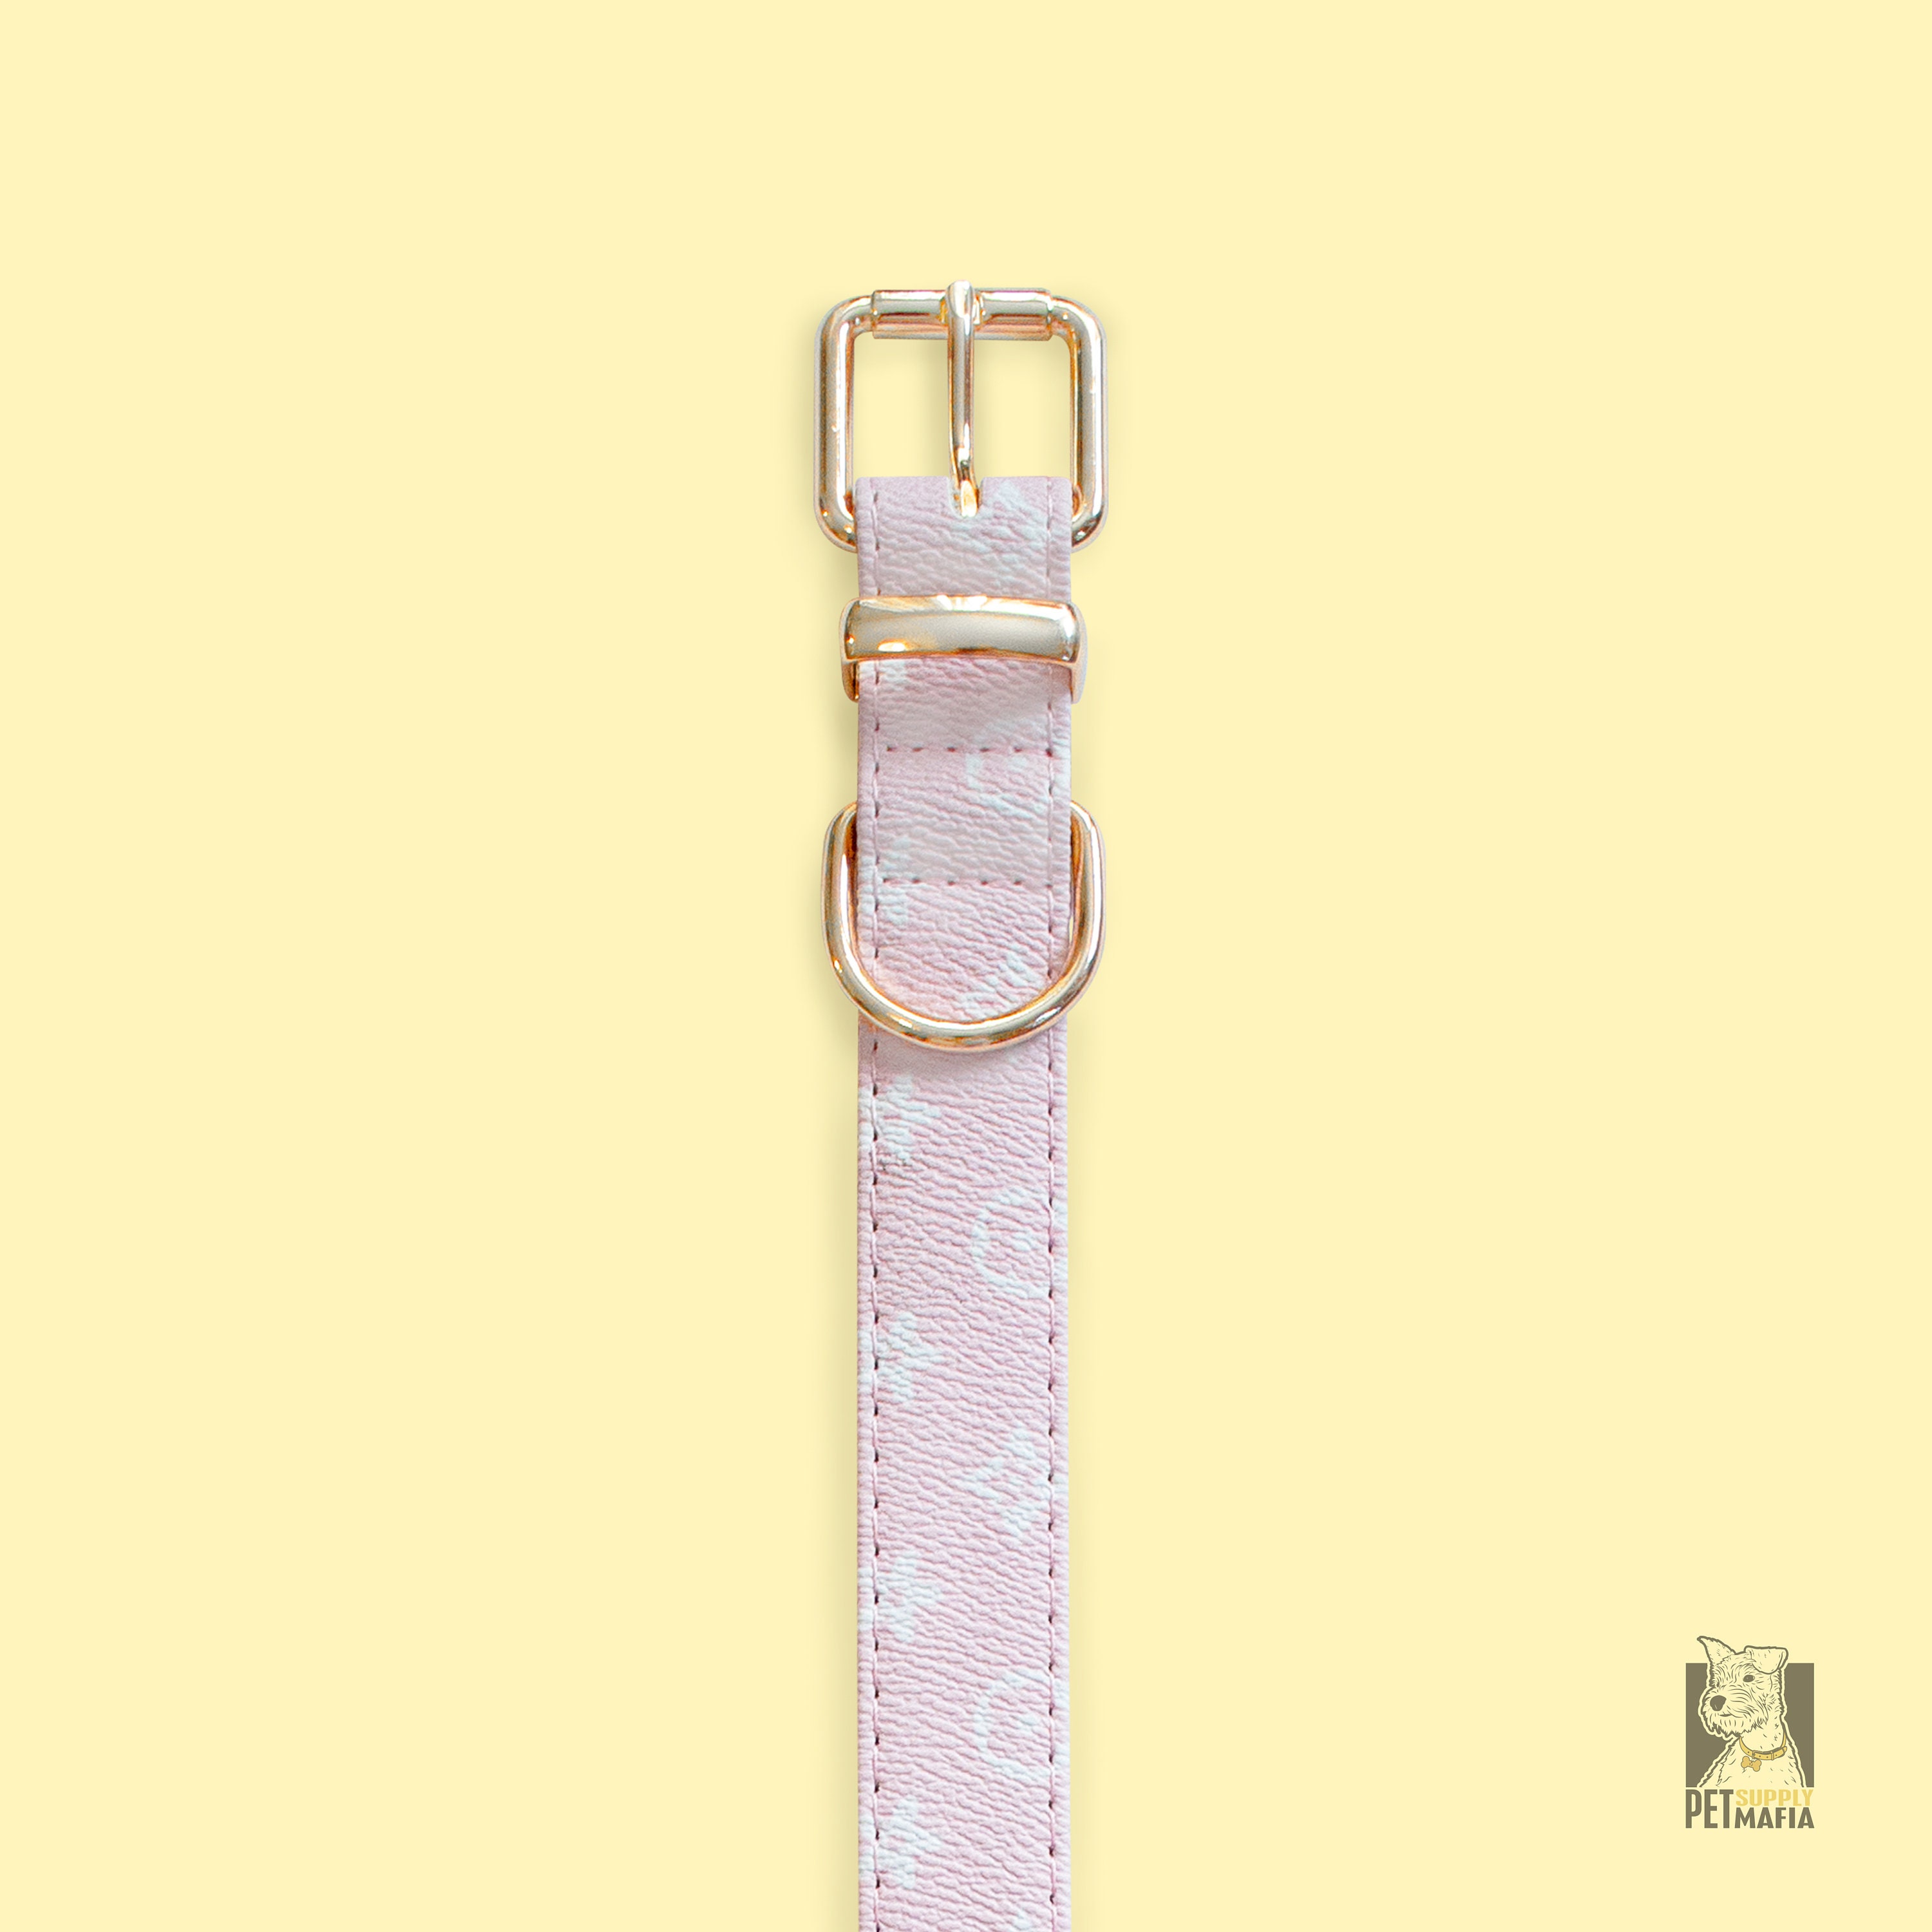 Hot Pink- Luxury Designer Monogram Empreinte Leather Dog Collar